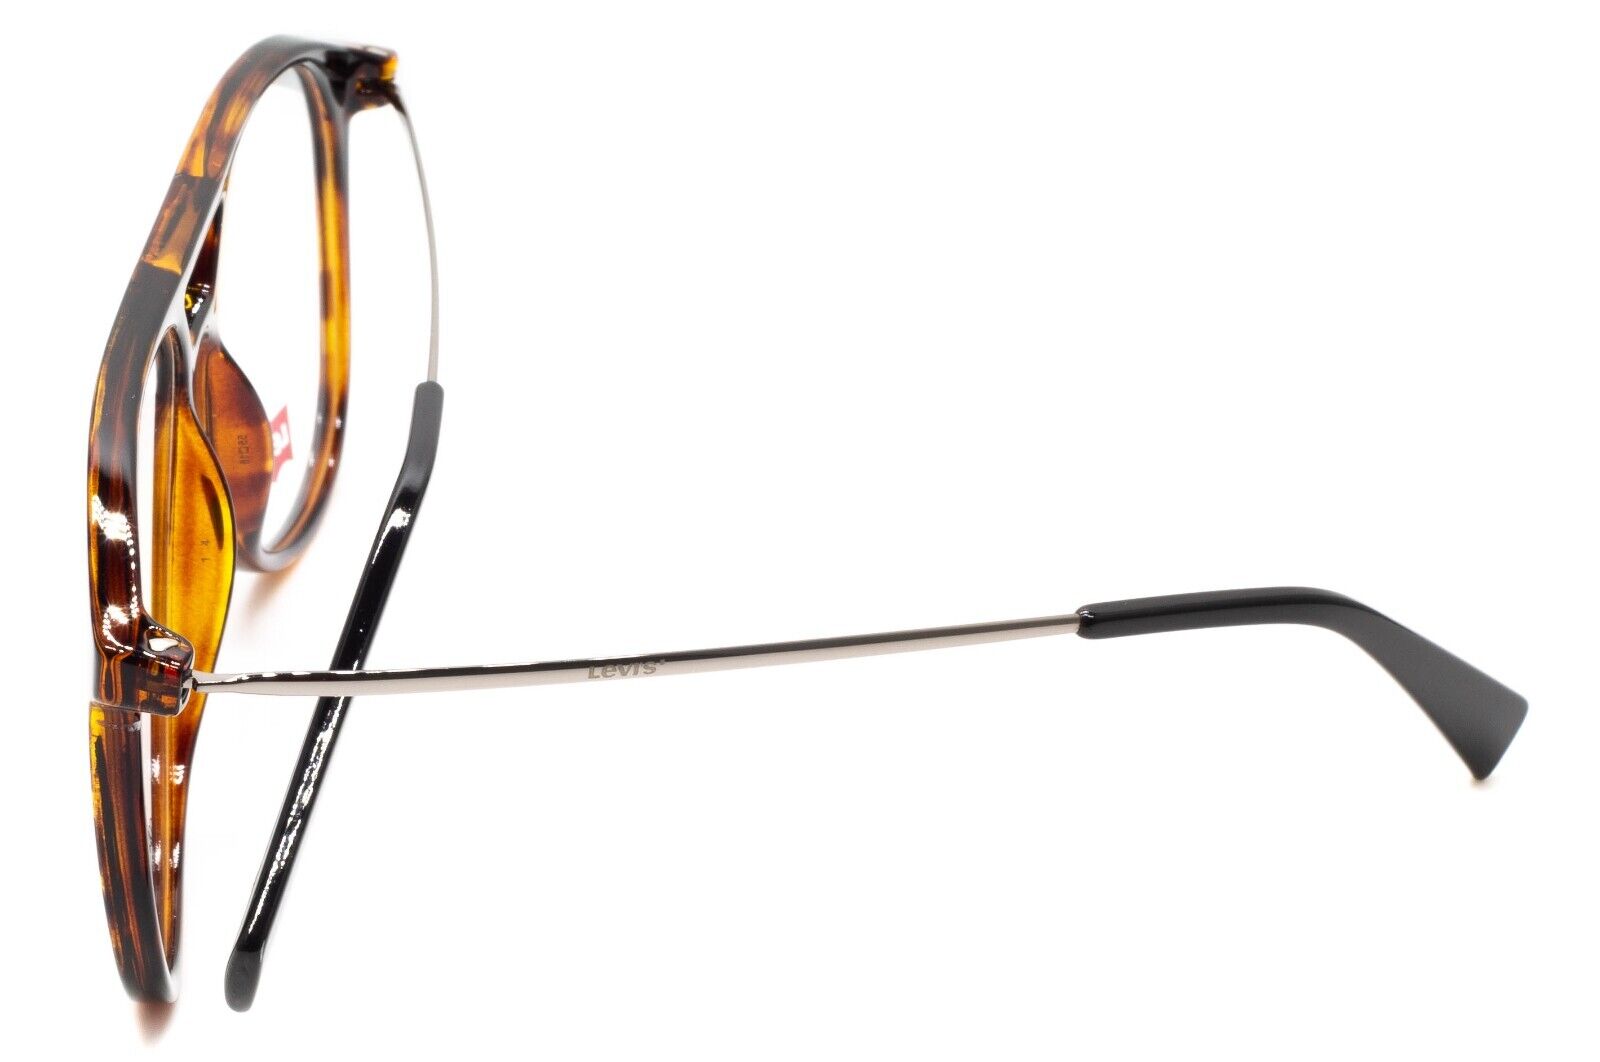 Levi's LV 1000 Eyeglasses Blue White / Clear Lens Unisex